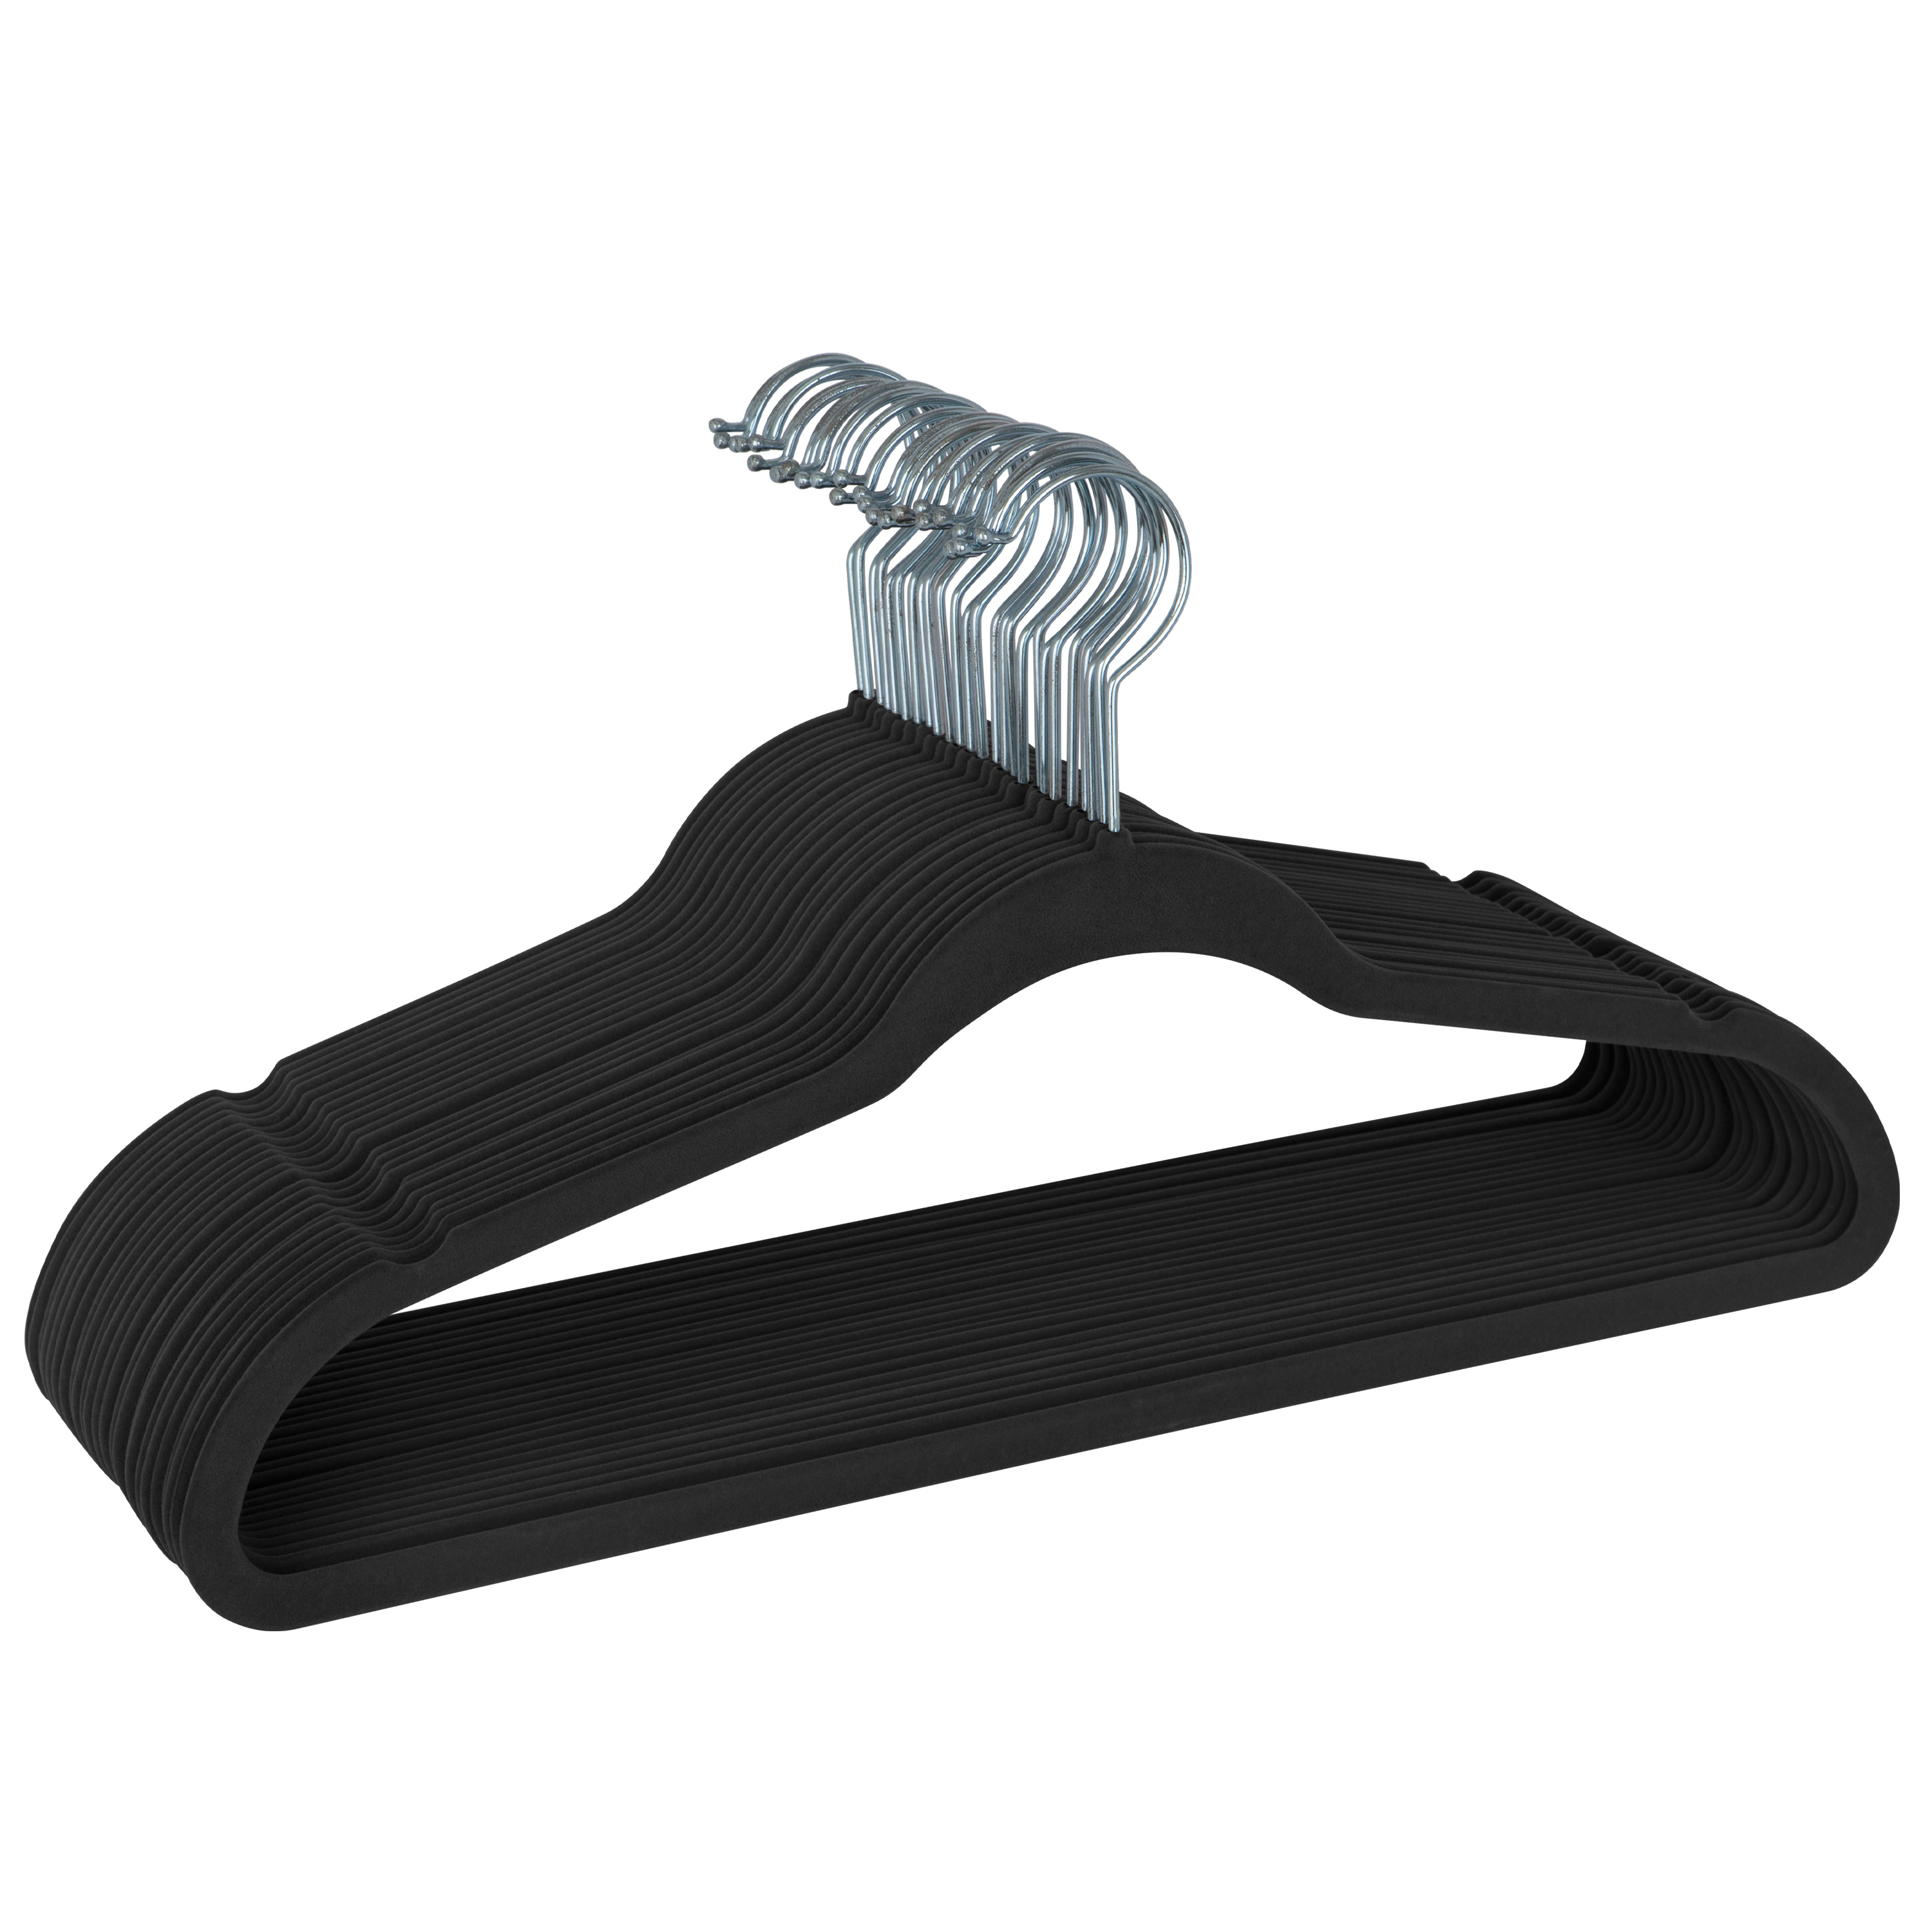 Simplify 25 Pack Slim Velvet Suit Hangers in Black - image 1 of 7